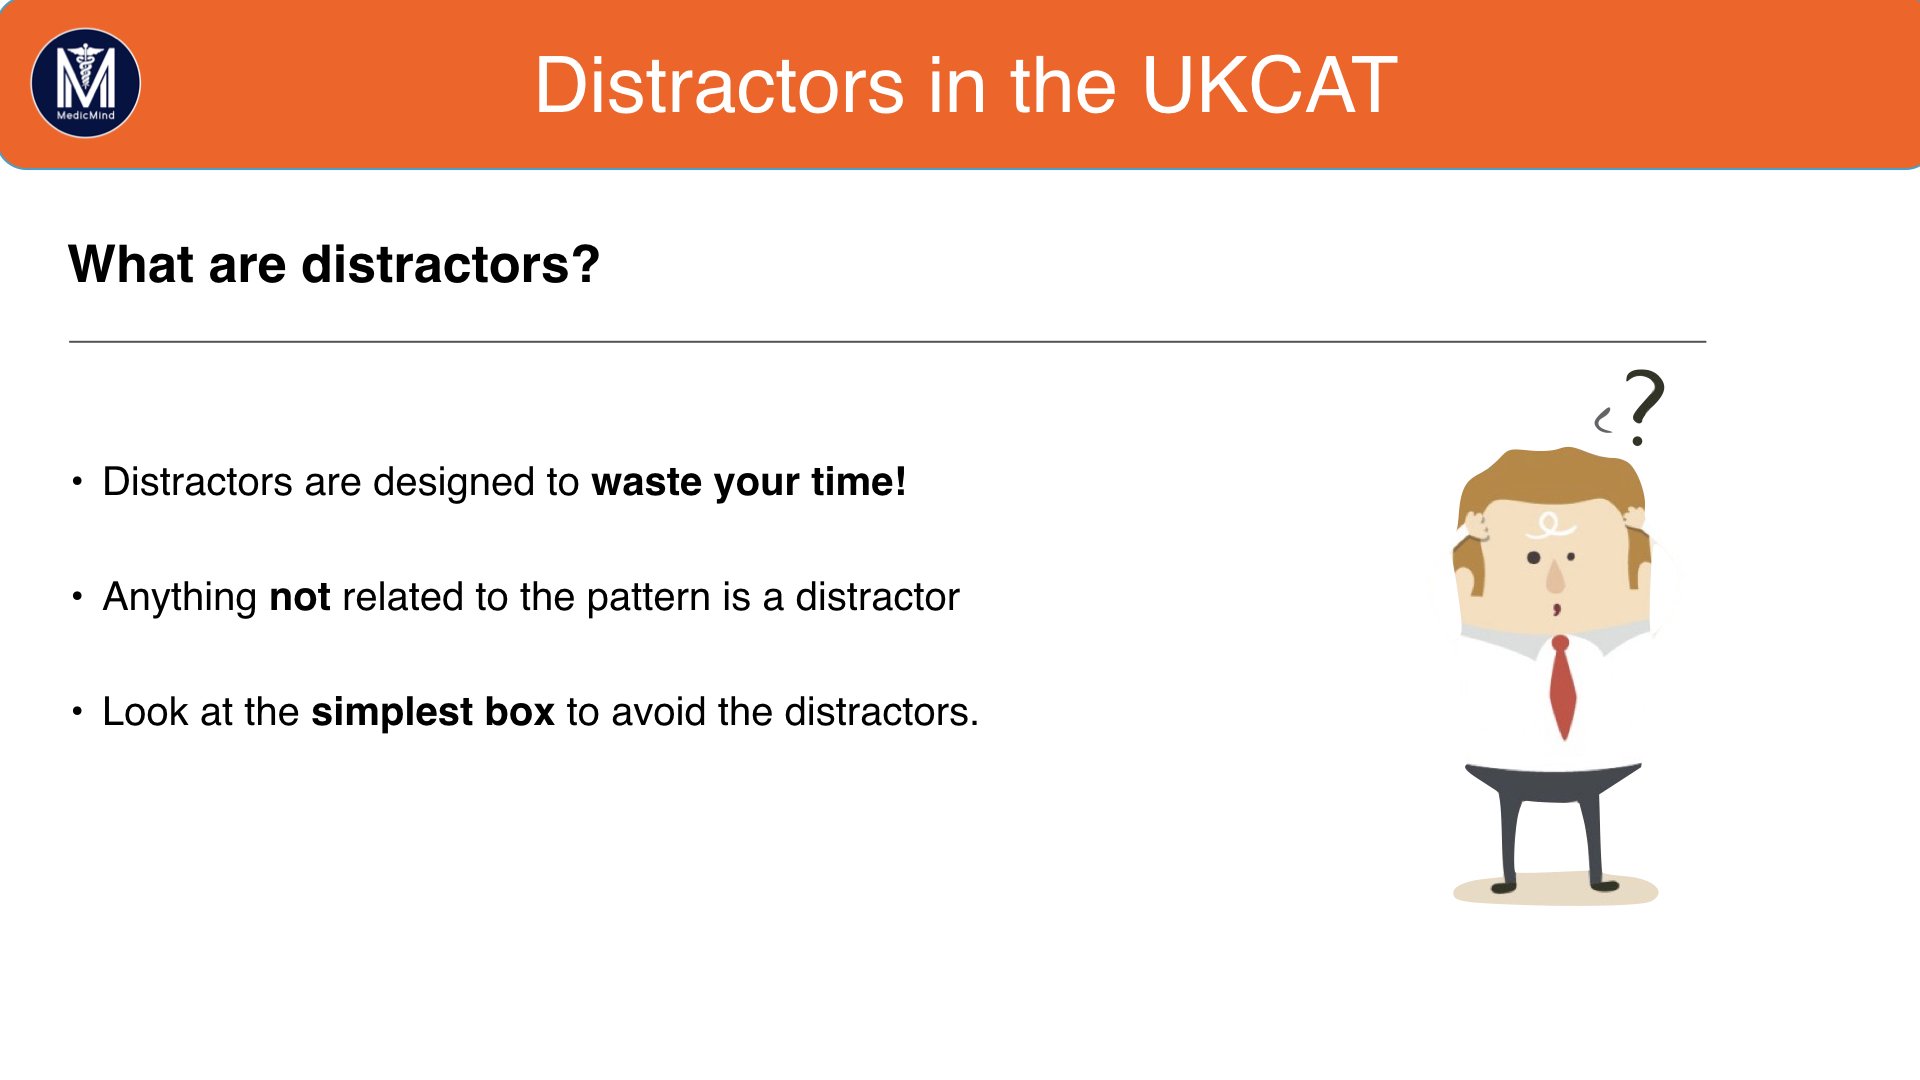 Distractors